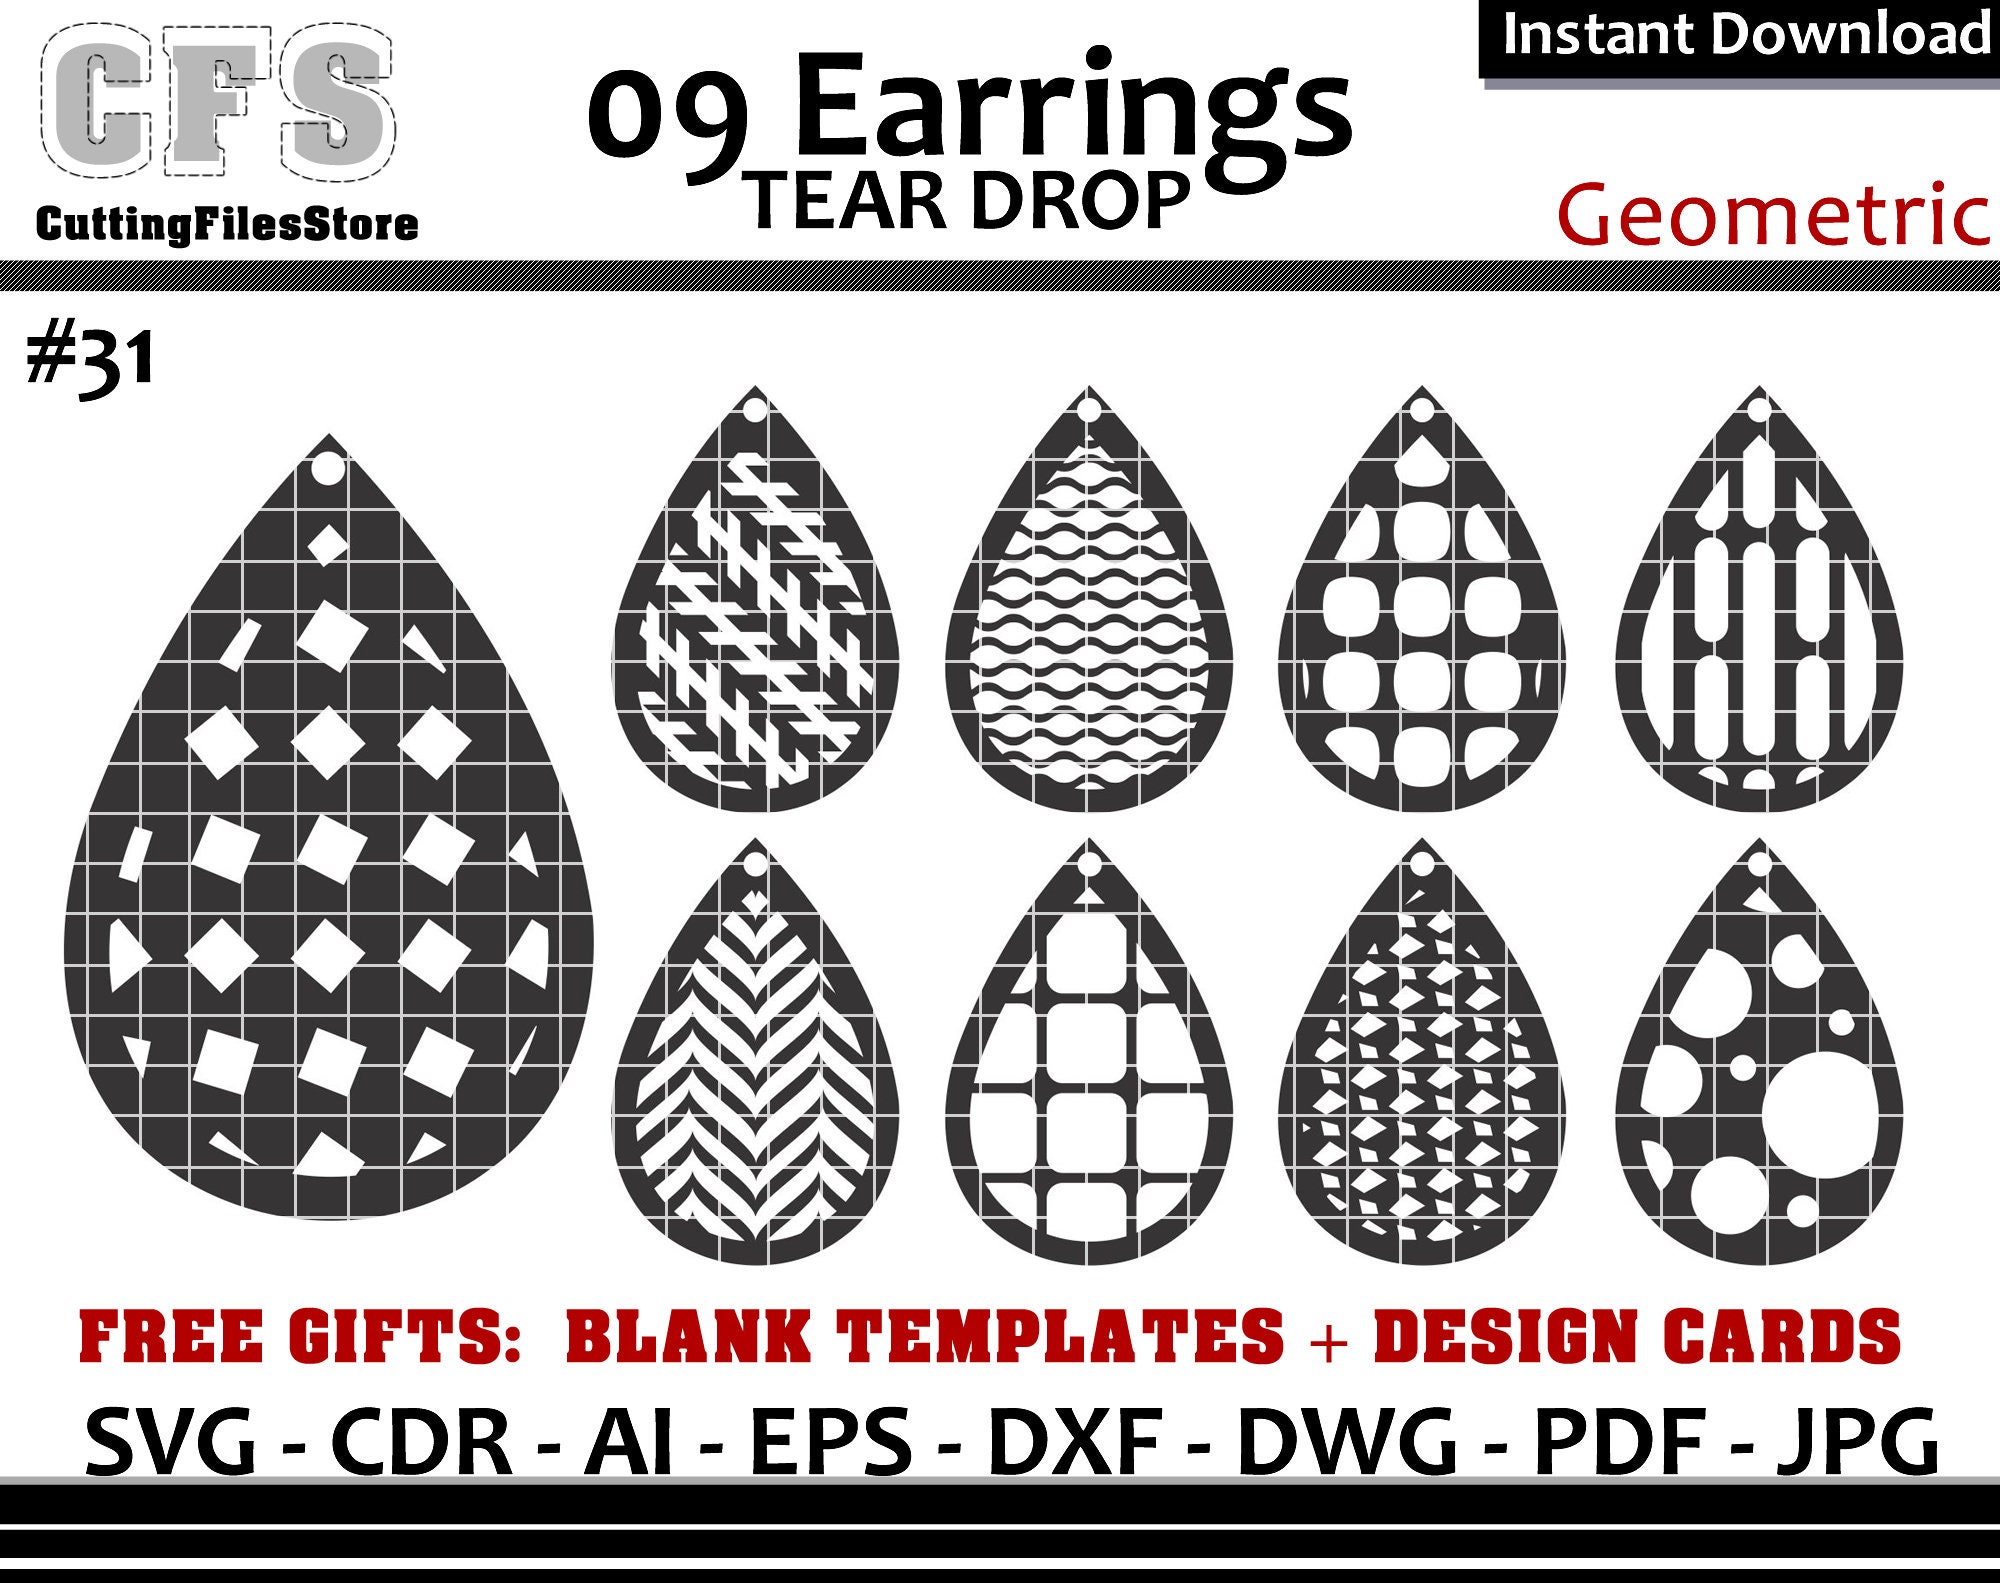 Earrings SVG Tear Drop Geometric Cut Files Gifts - Etsy